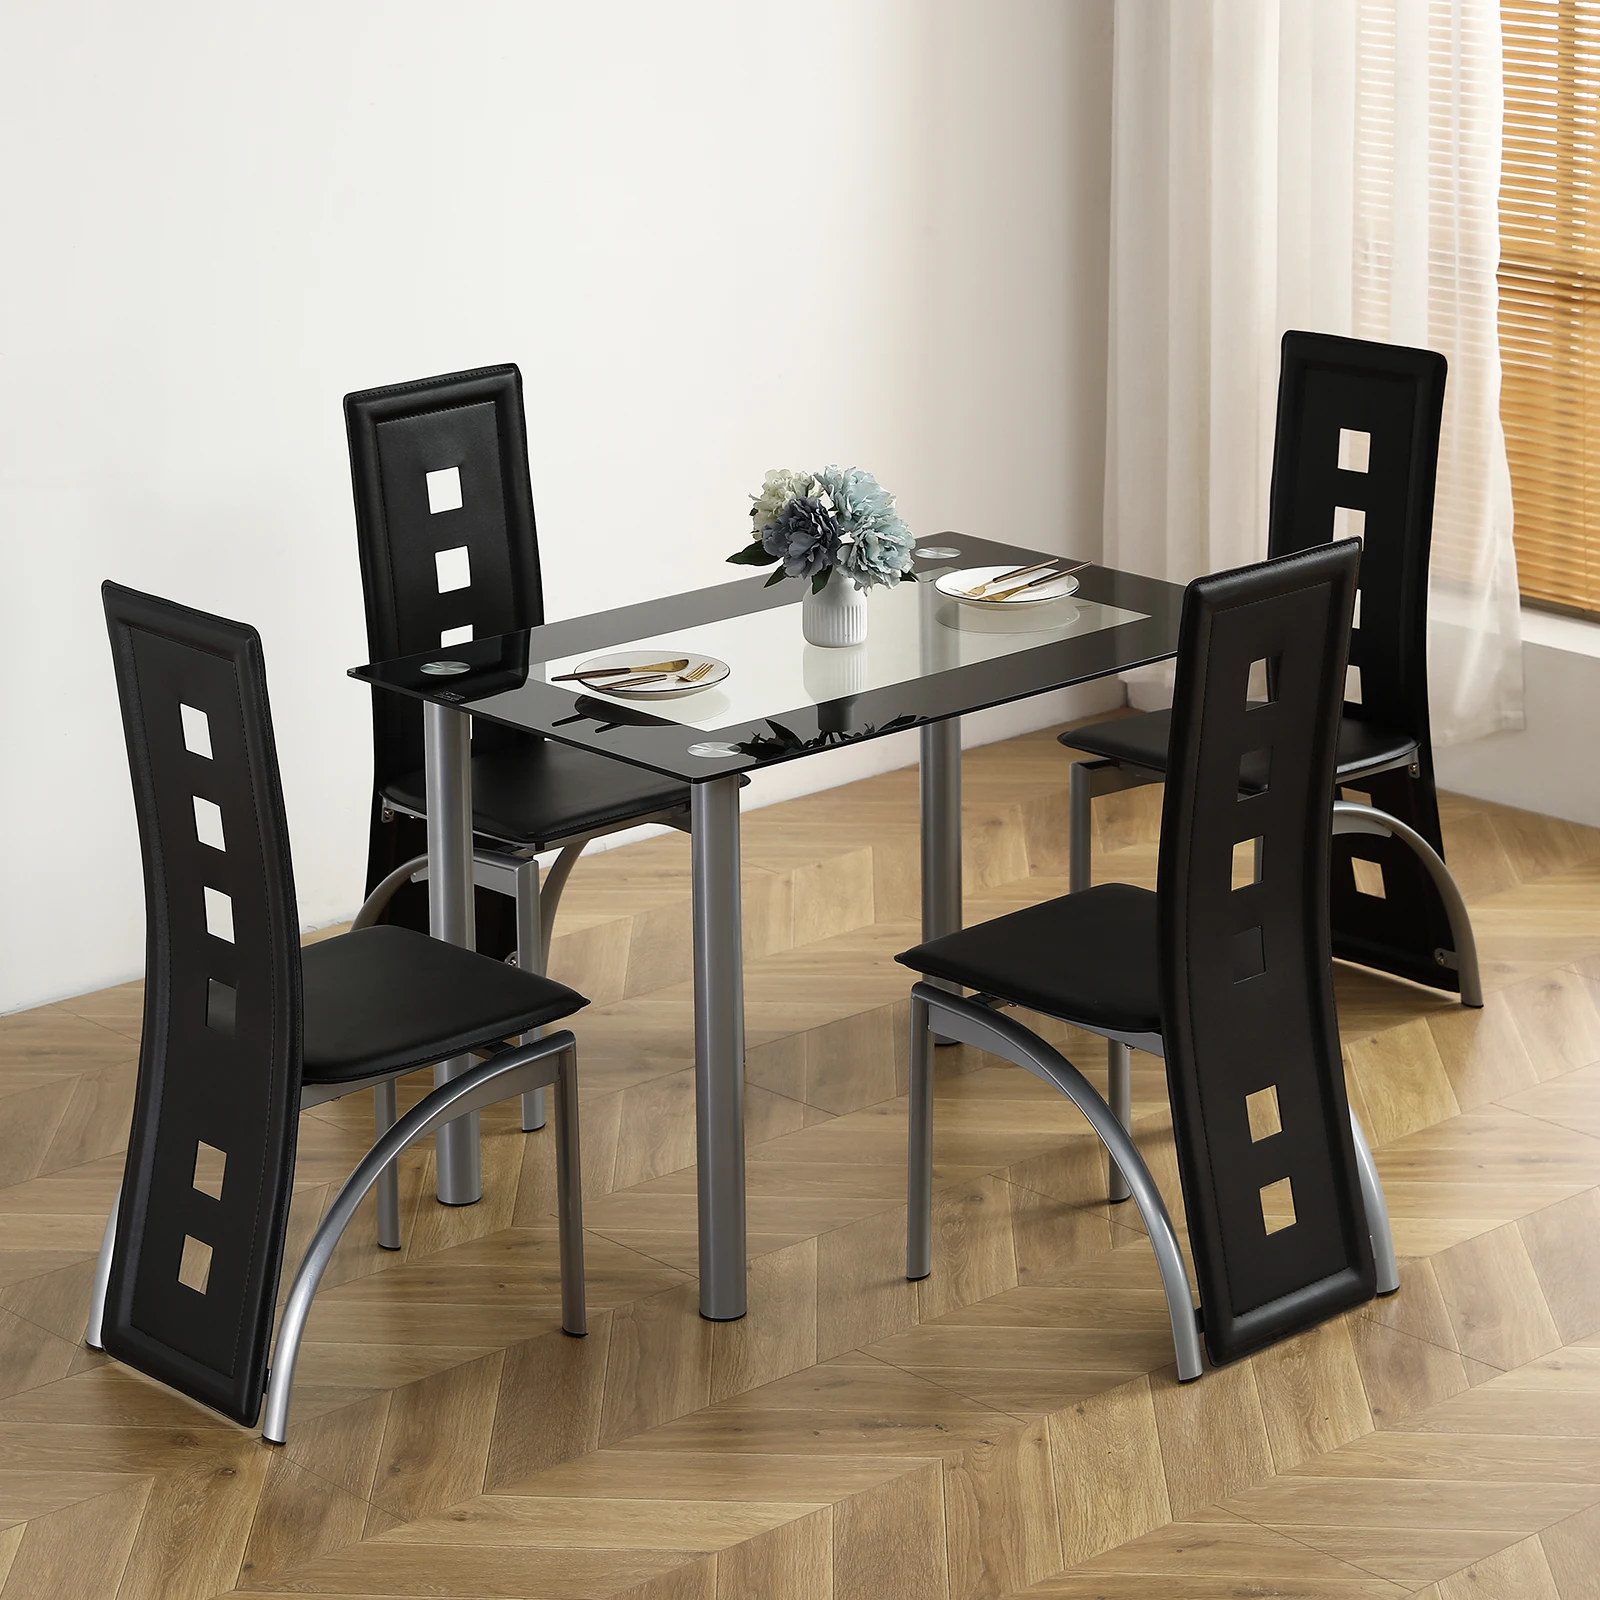 

[Flash Sale] набор из 5 предметов для 4 обеденных столов, обеденный стол из закаленного стекла для кухни, 4 черных стула, серебристые ножки стола [US-W...